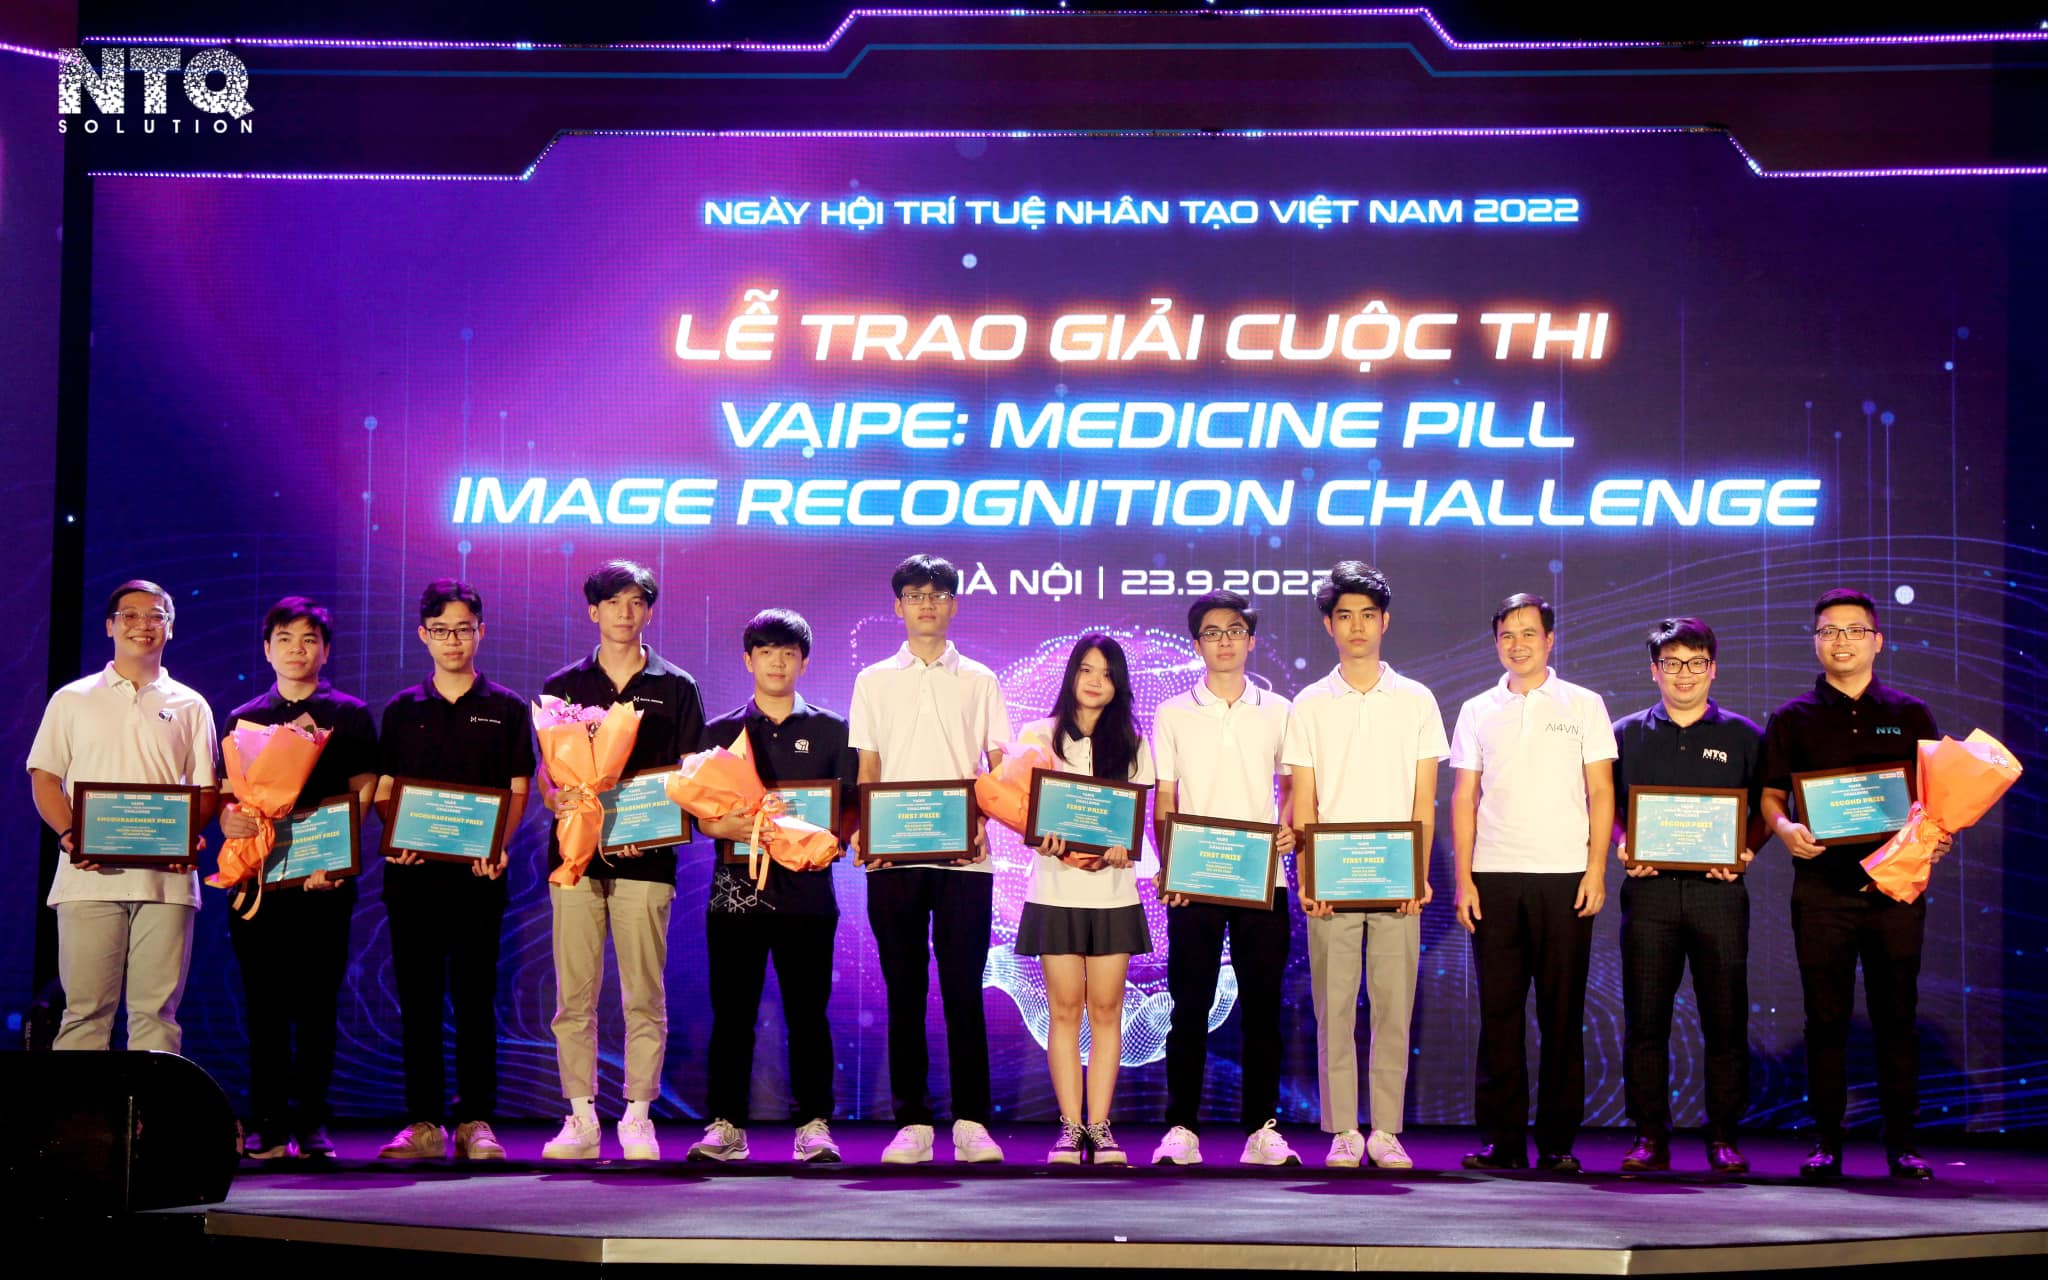 NTQソリューションが「ベトナムのAIコンテスト」で2位を獲得、医療分野のソリューションを開発